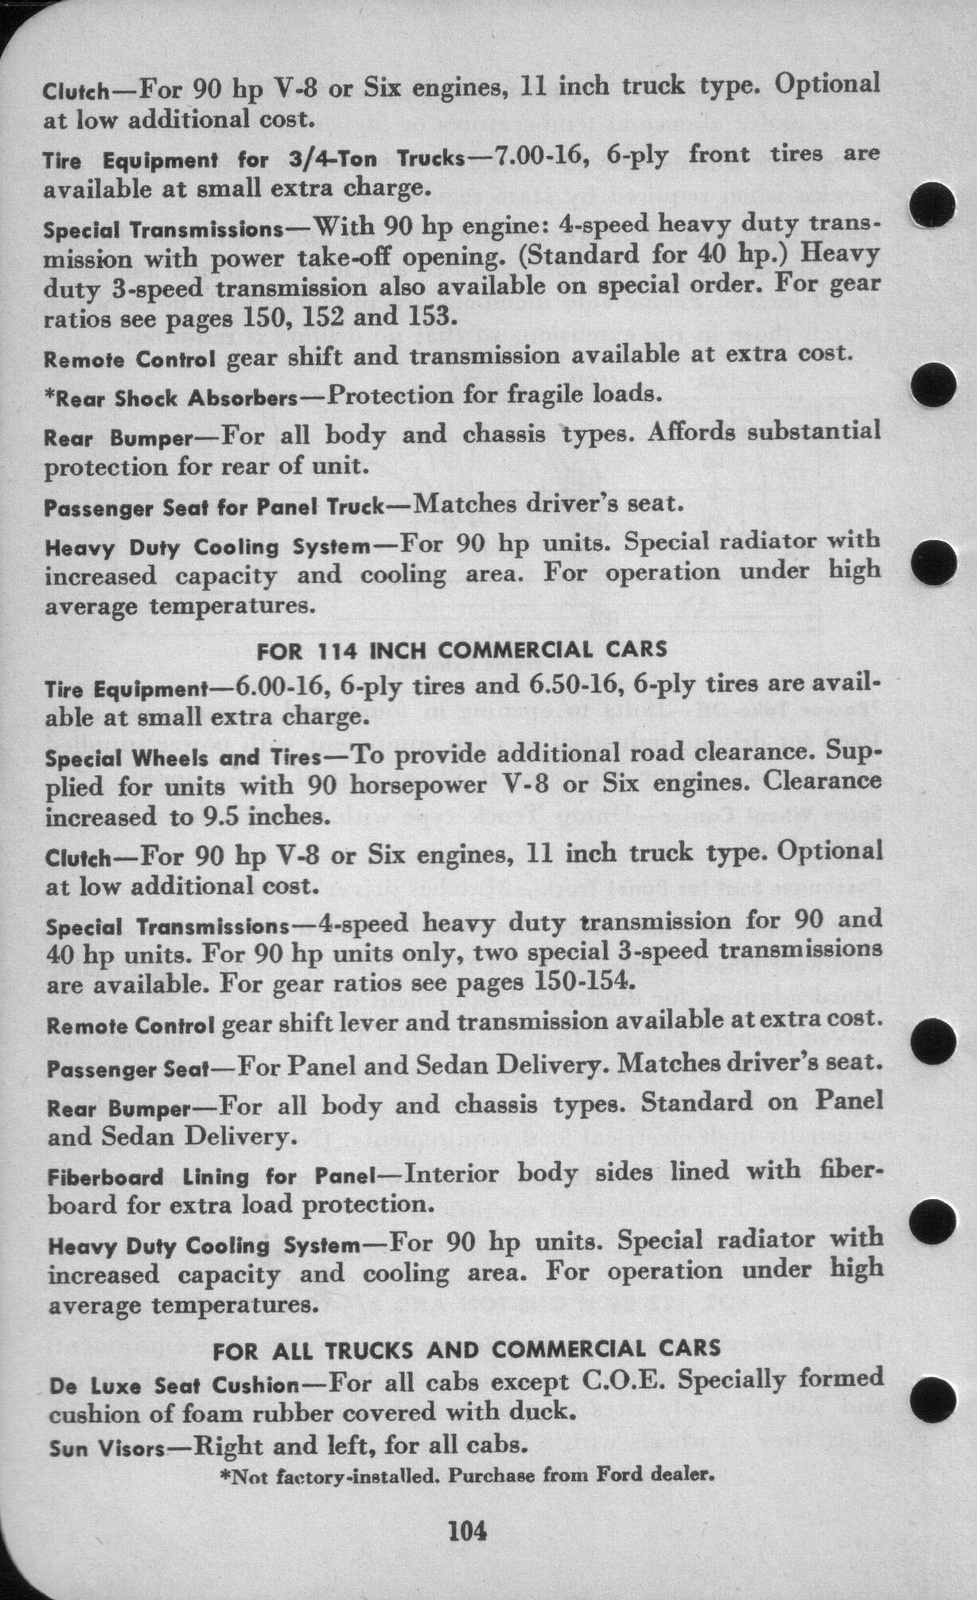 n_1942 Ford Salesmans Reference Manual-104.jpg